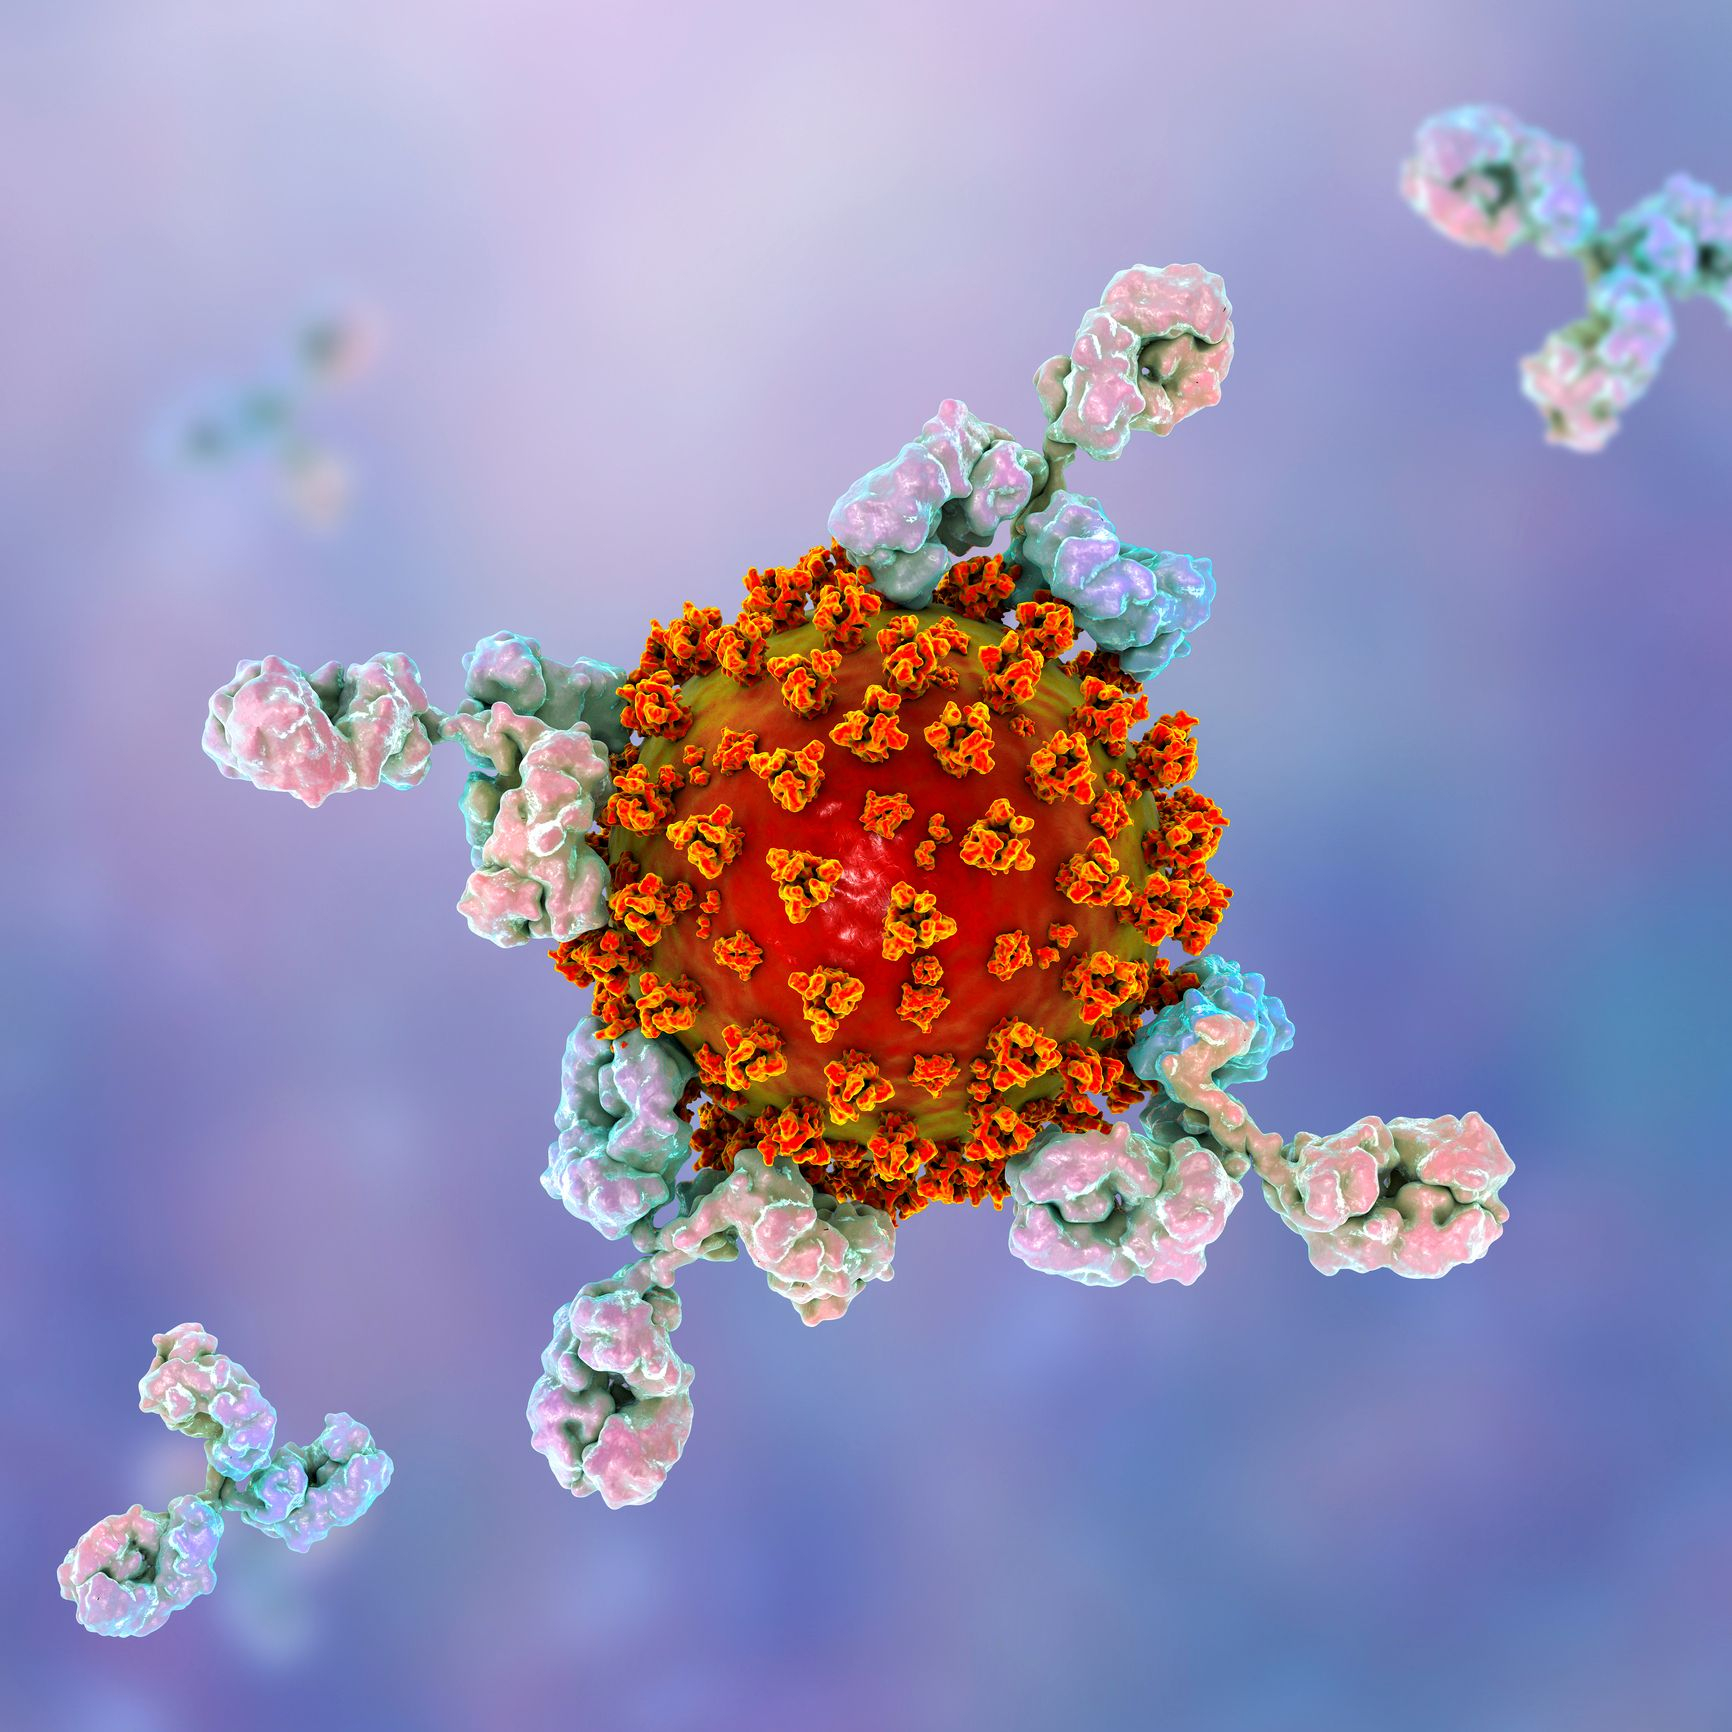 Ученые из Германии выделили 28 антител, нейтрализующих COVID-19